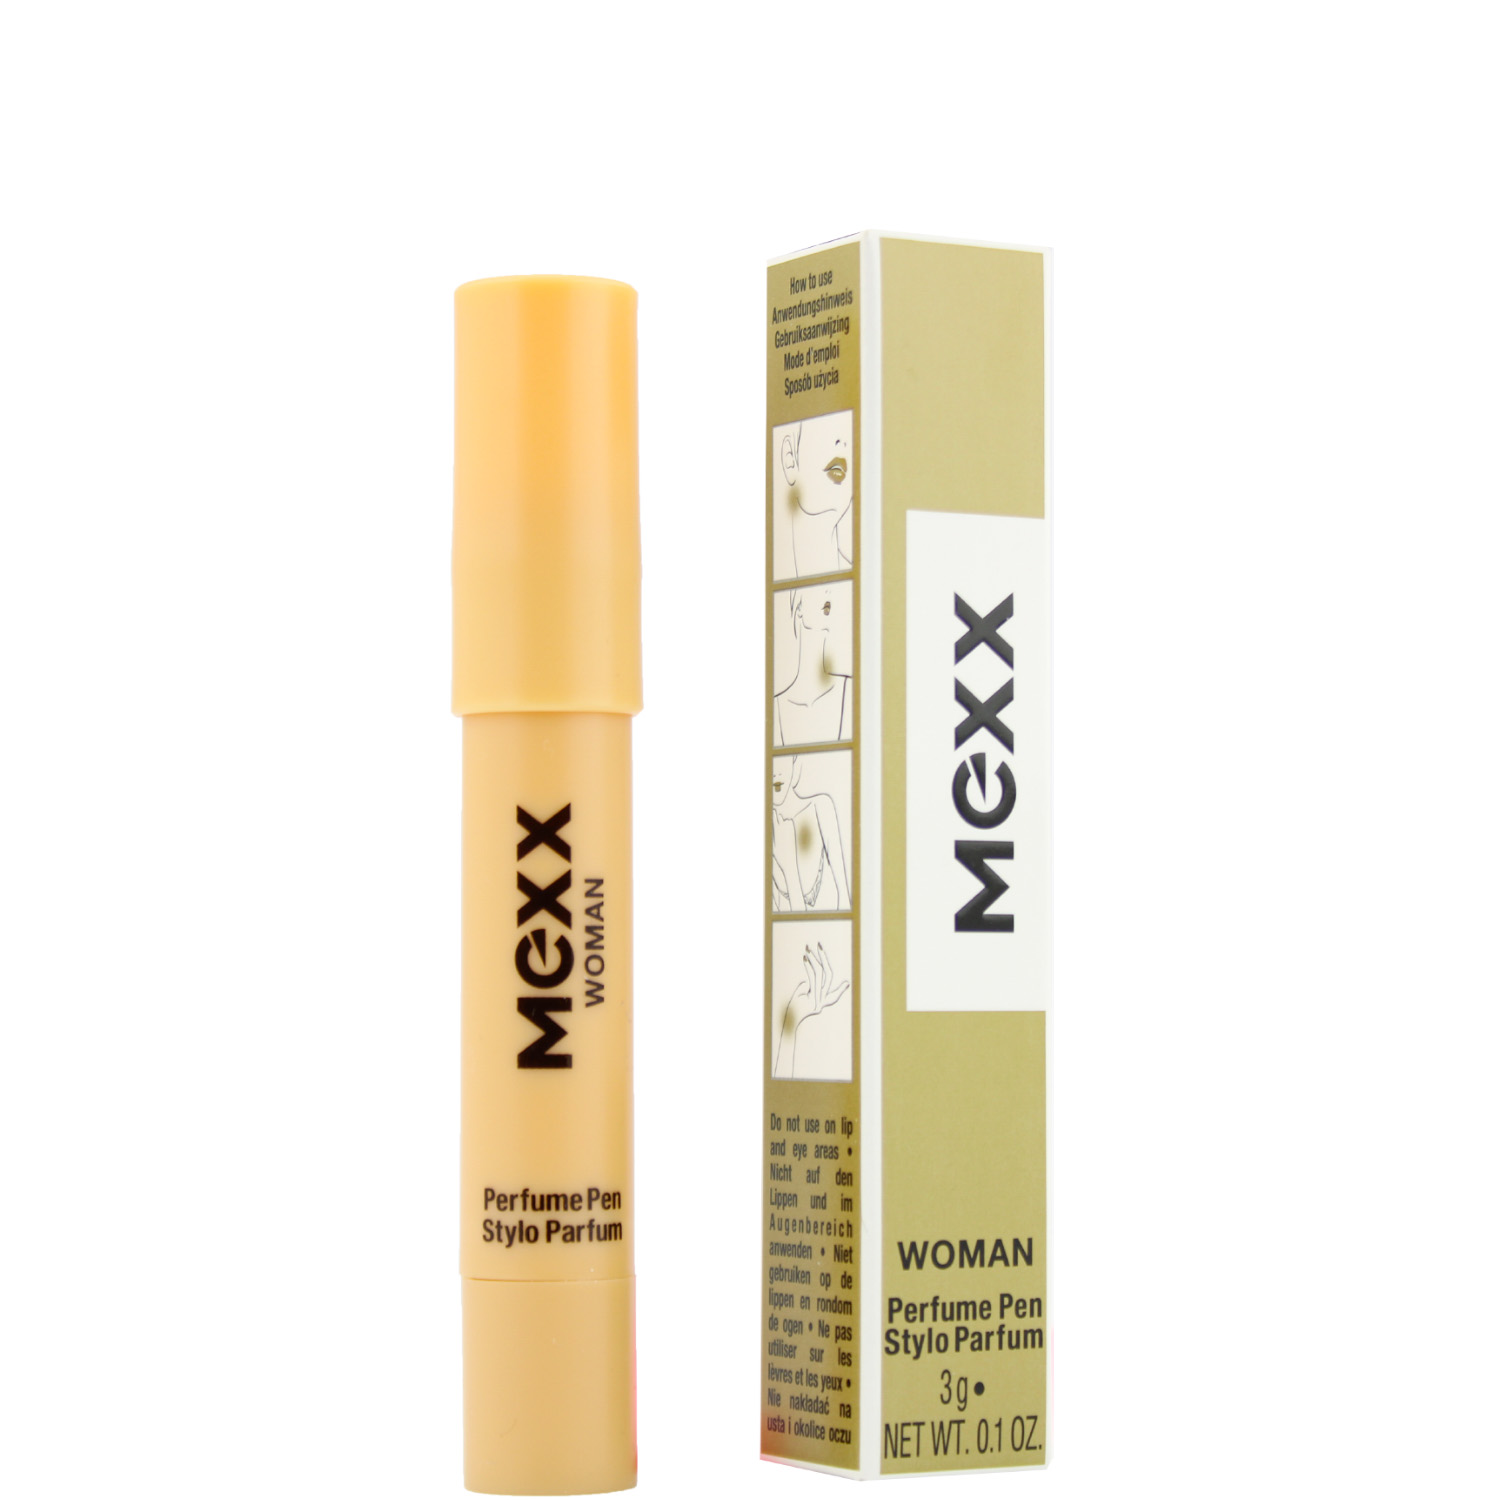 Mexx Woman Parfum Pen 3g